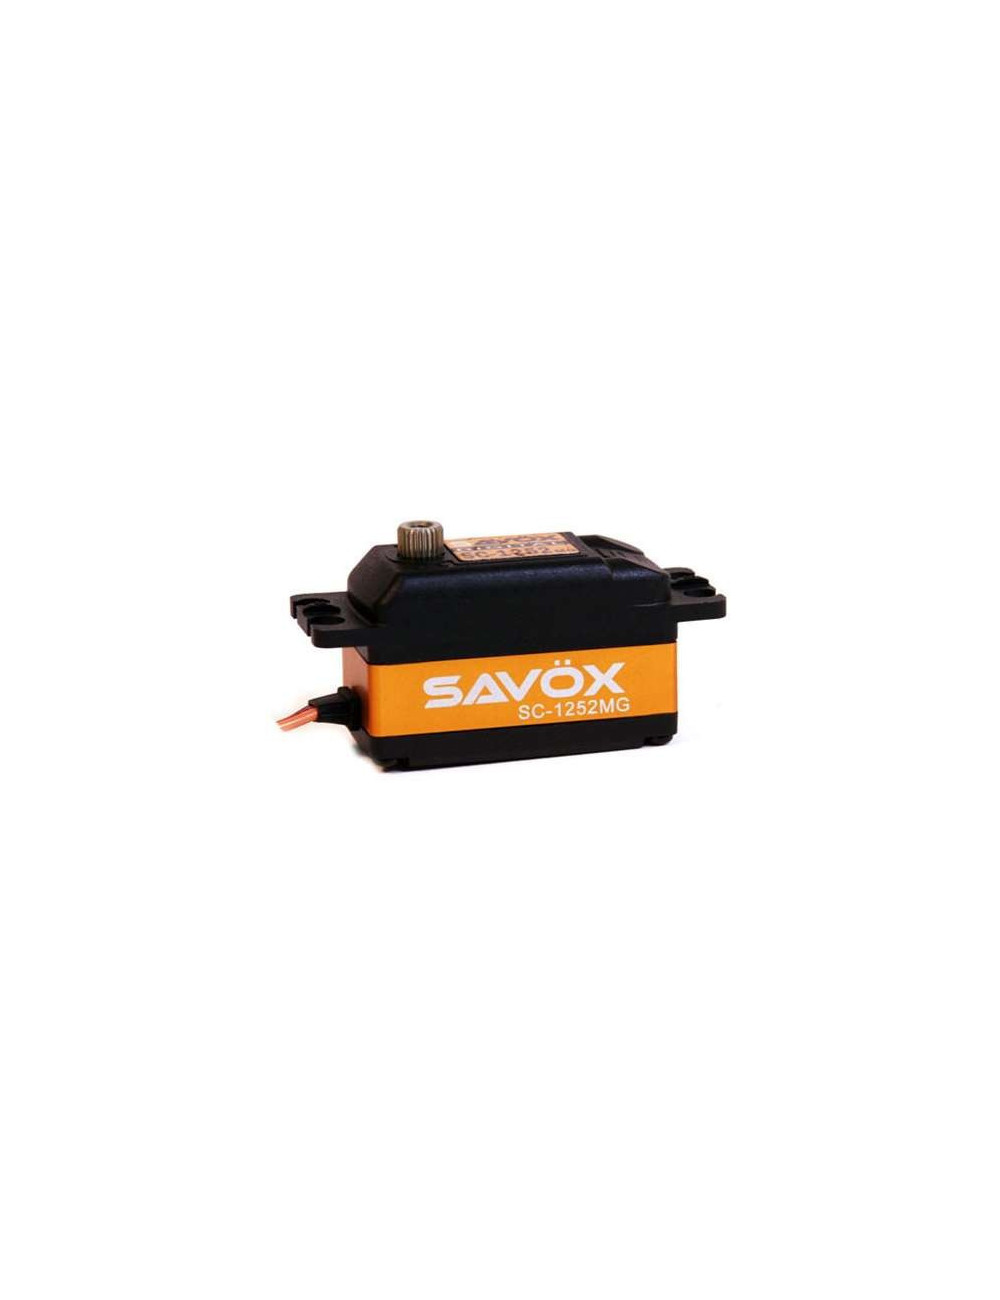 SAVOX SC-1252MG Digital Servo Low Profile SUPER SPEED 7KG